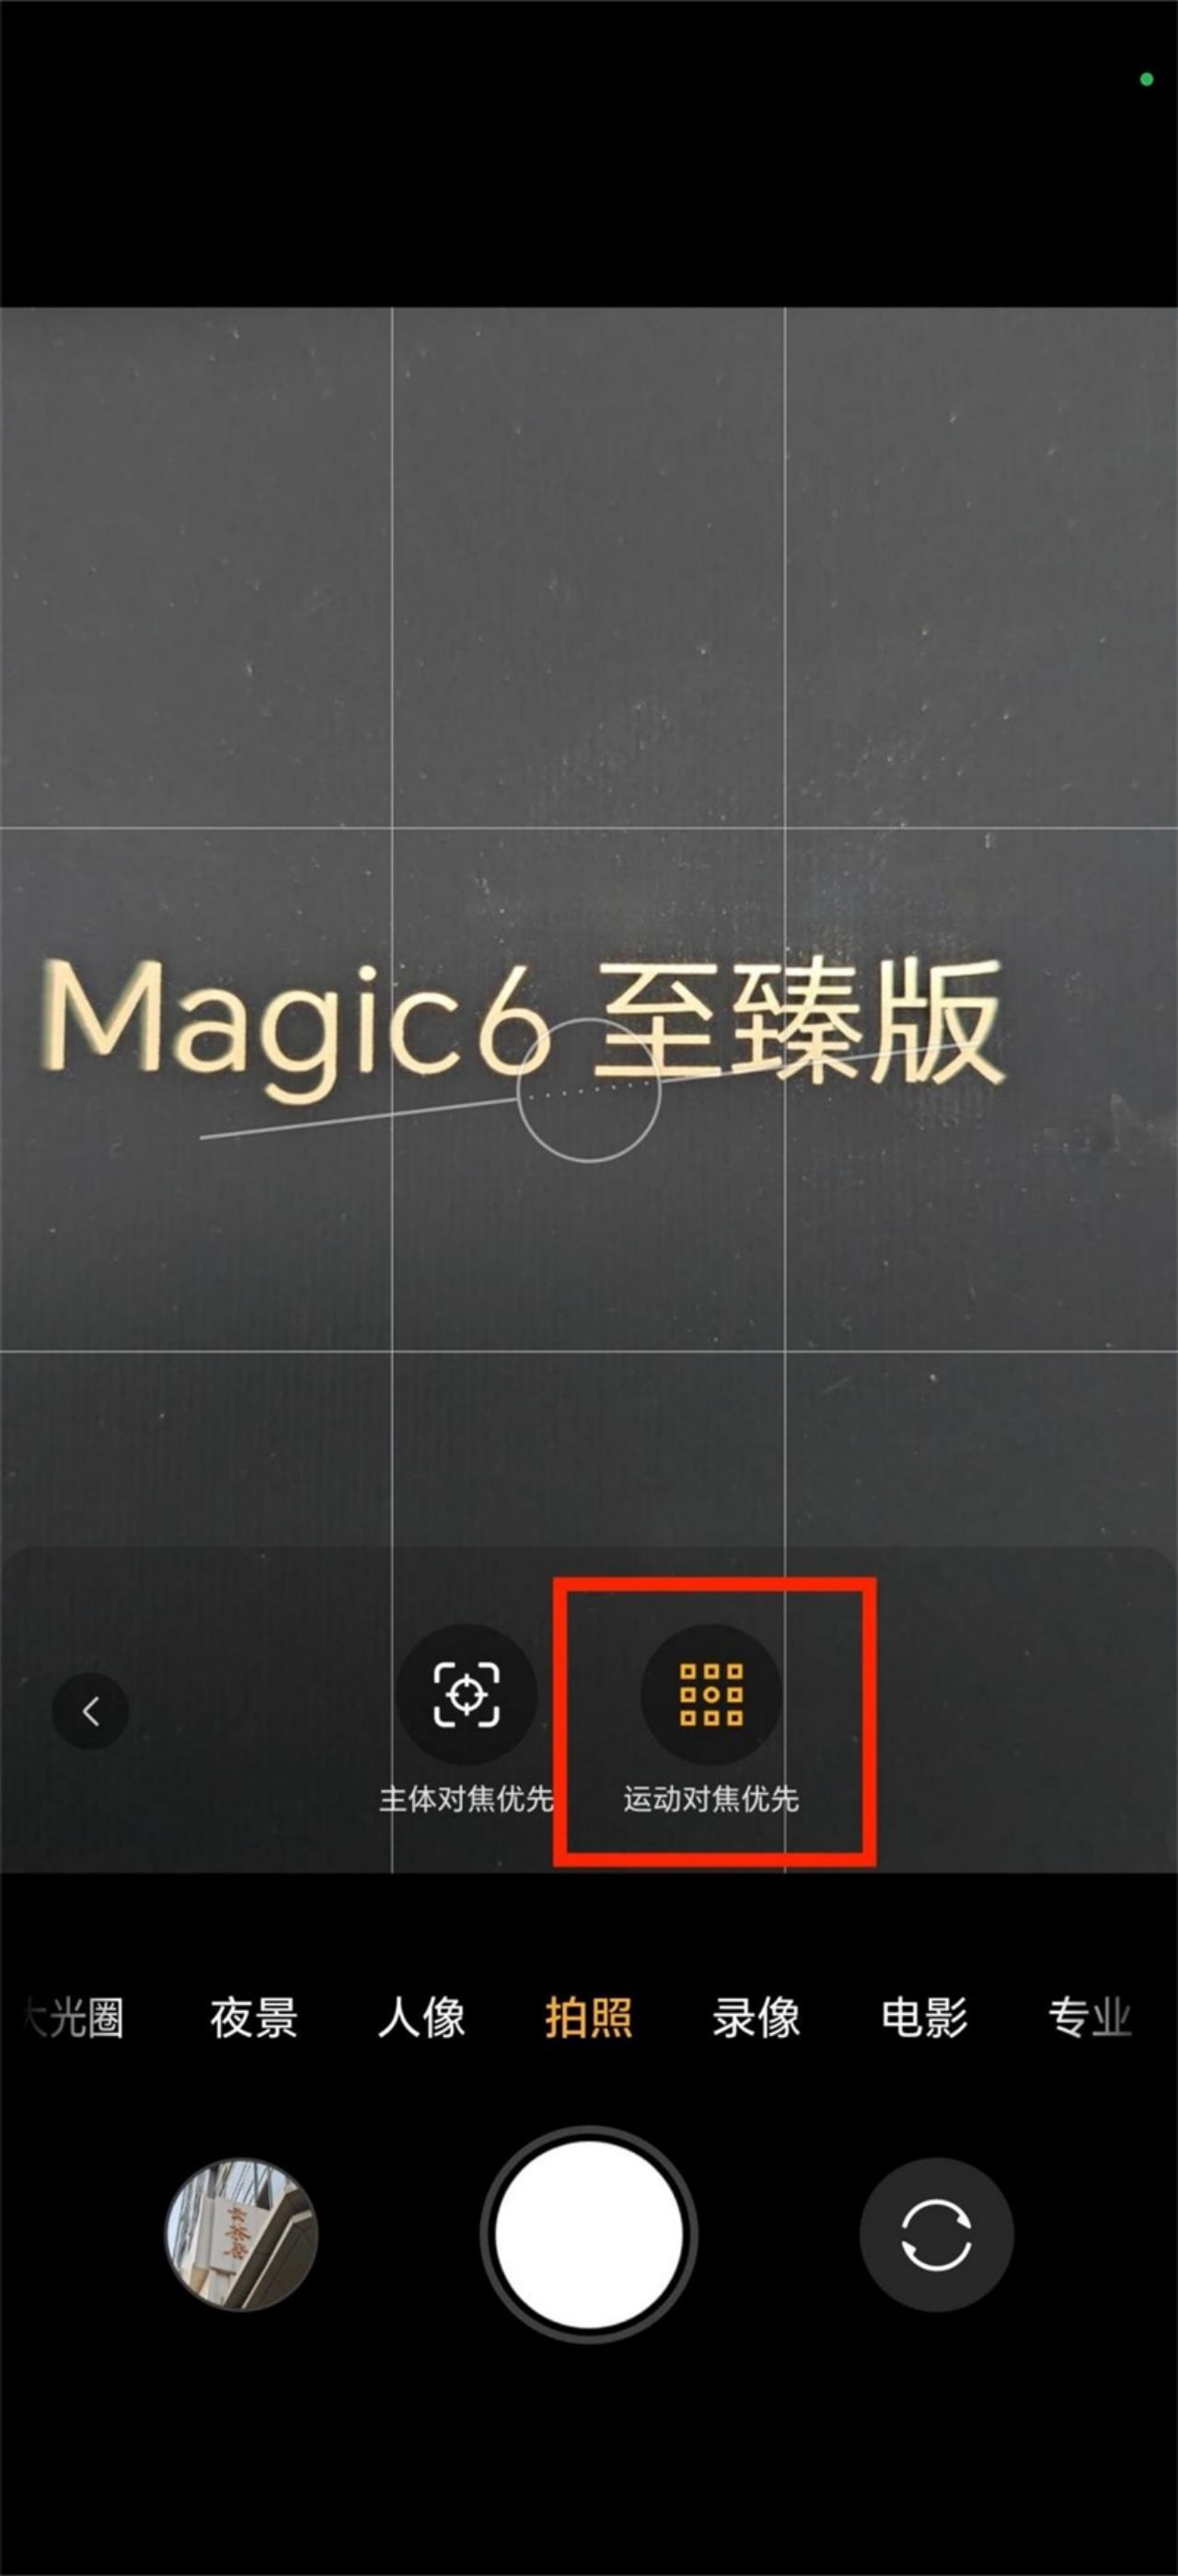 Honor Magic6 Ultimate Review